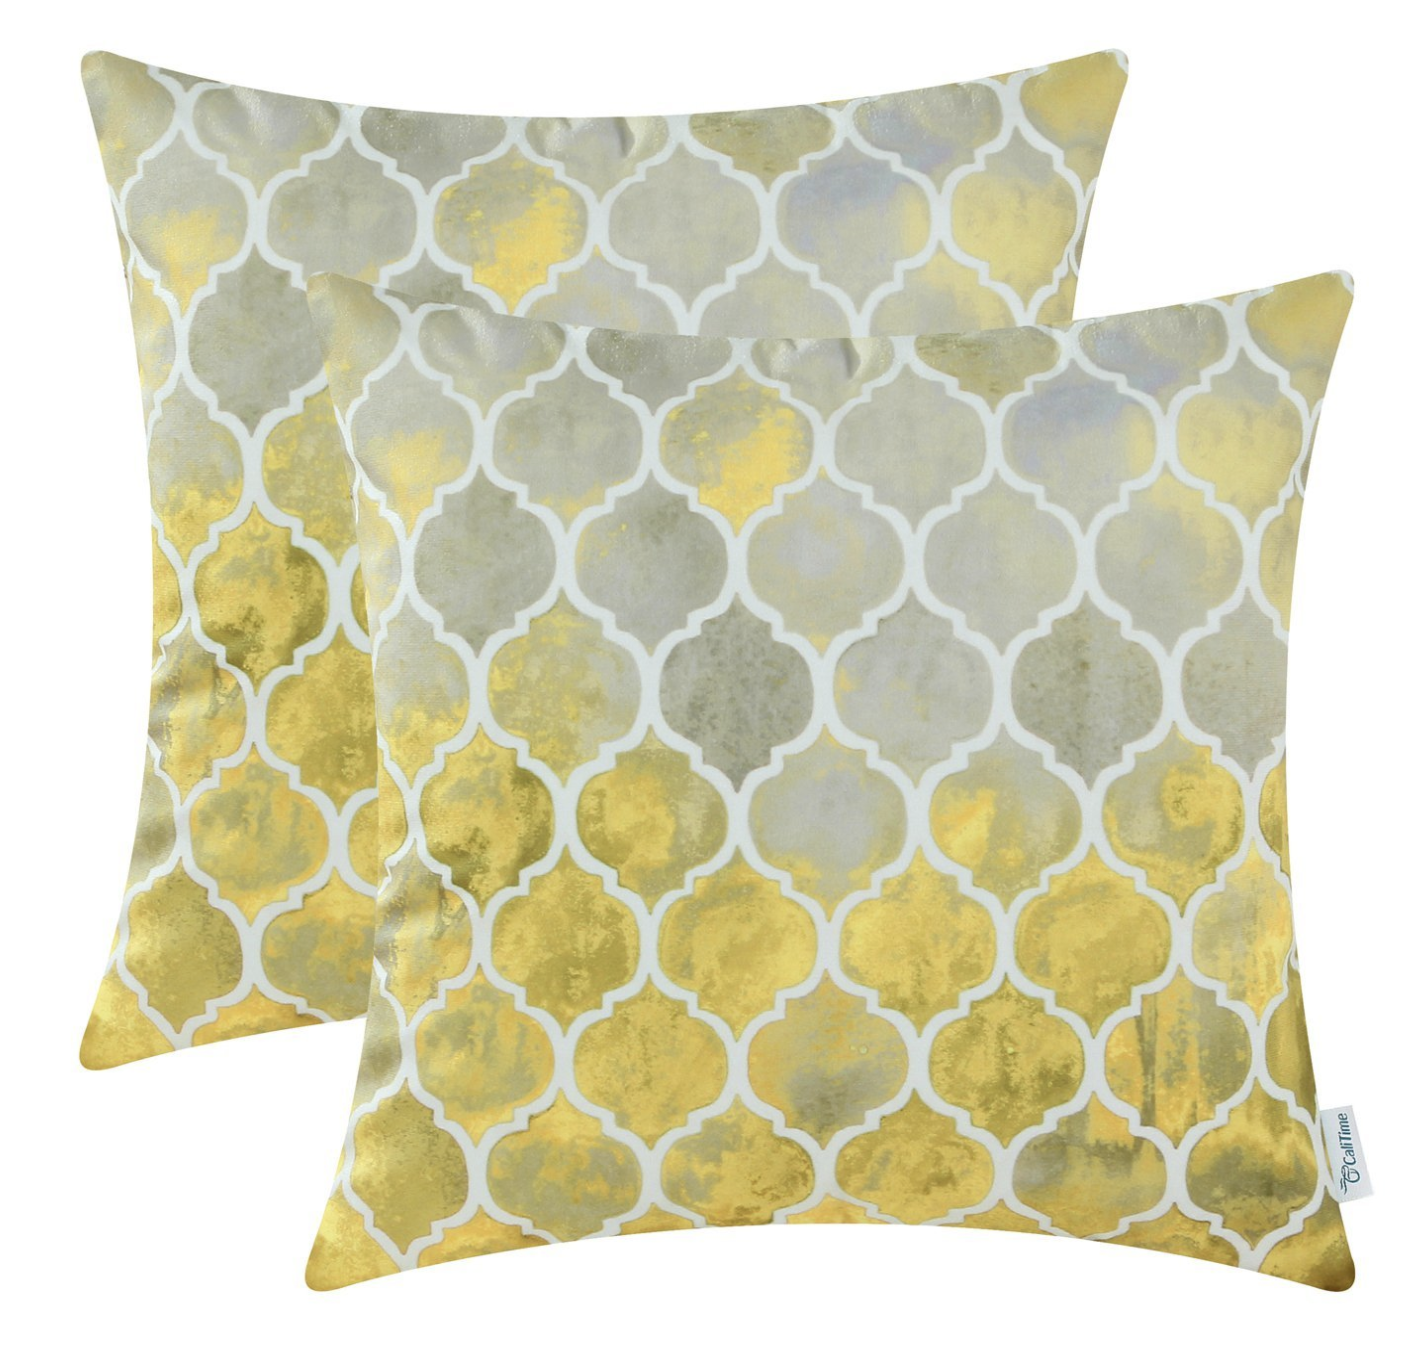 Trellis Pillows in Yellow